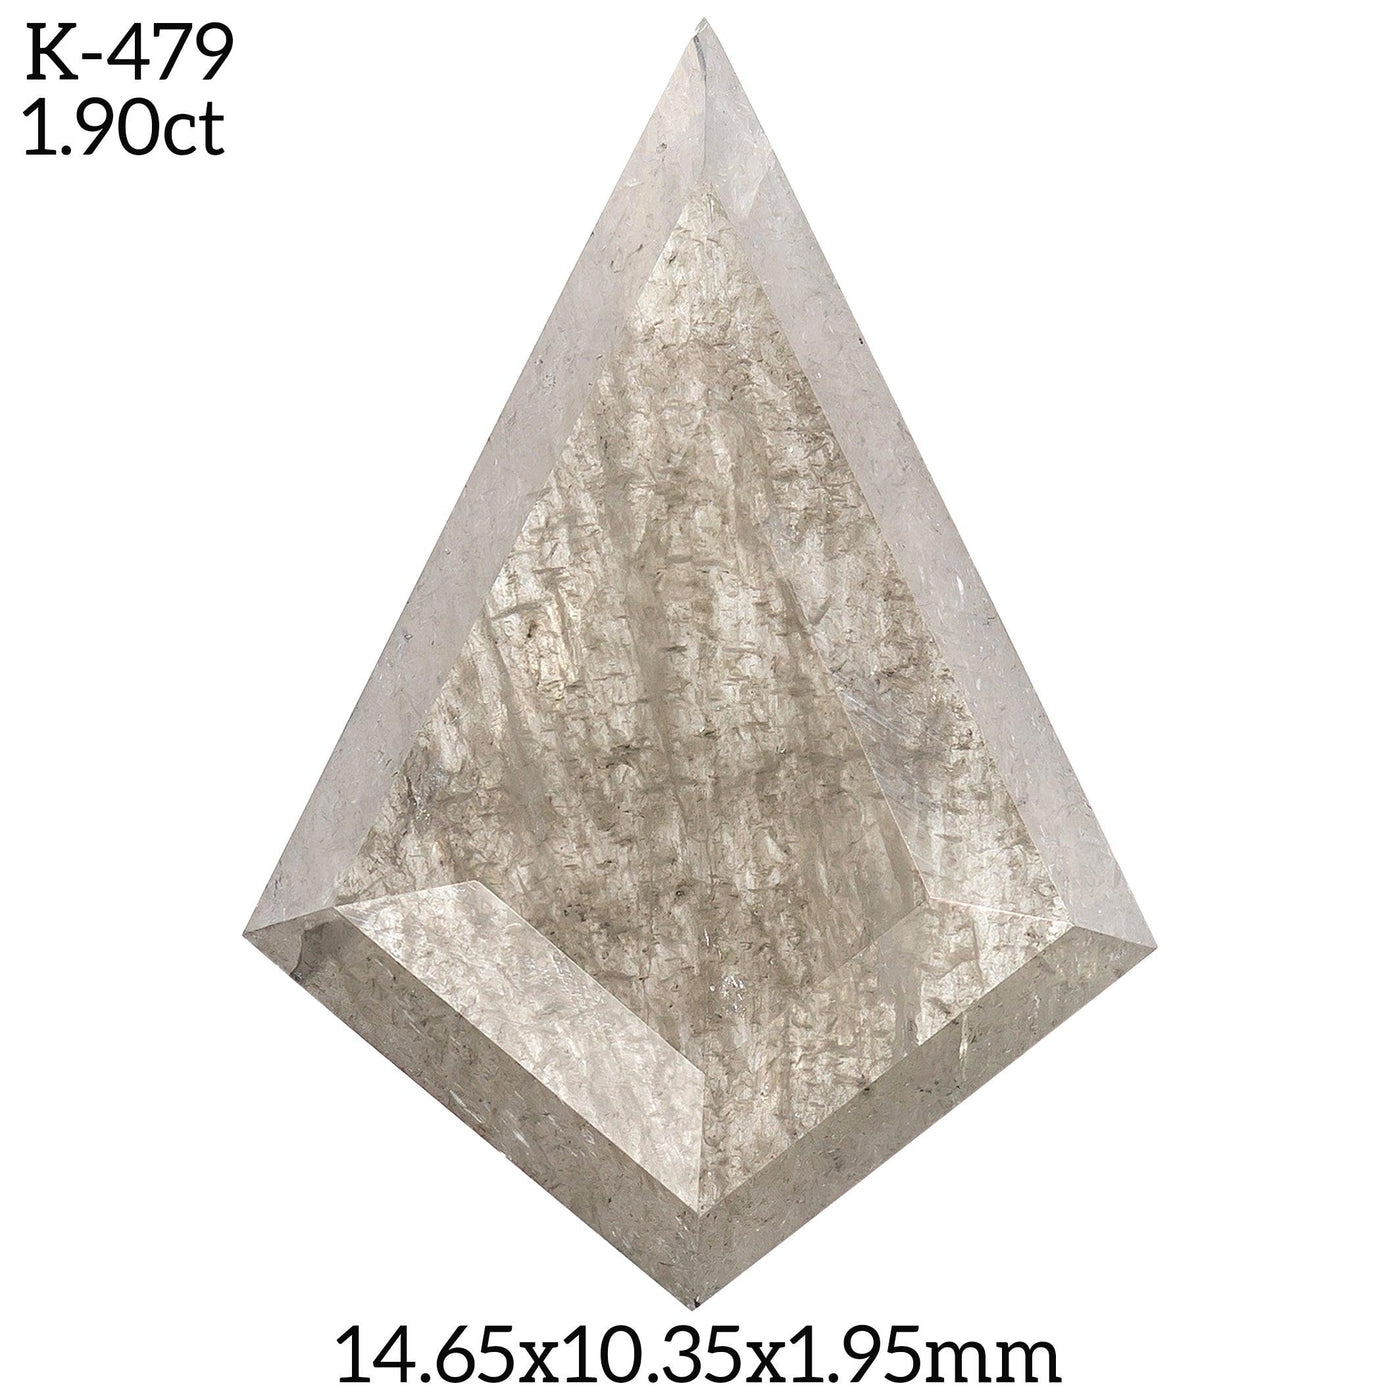 K479 - Salt and pepper kite diamond